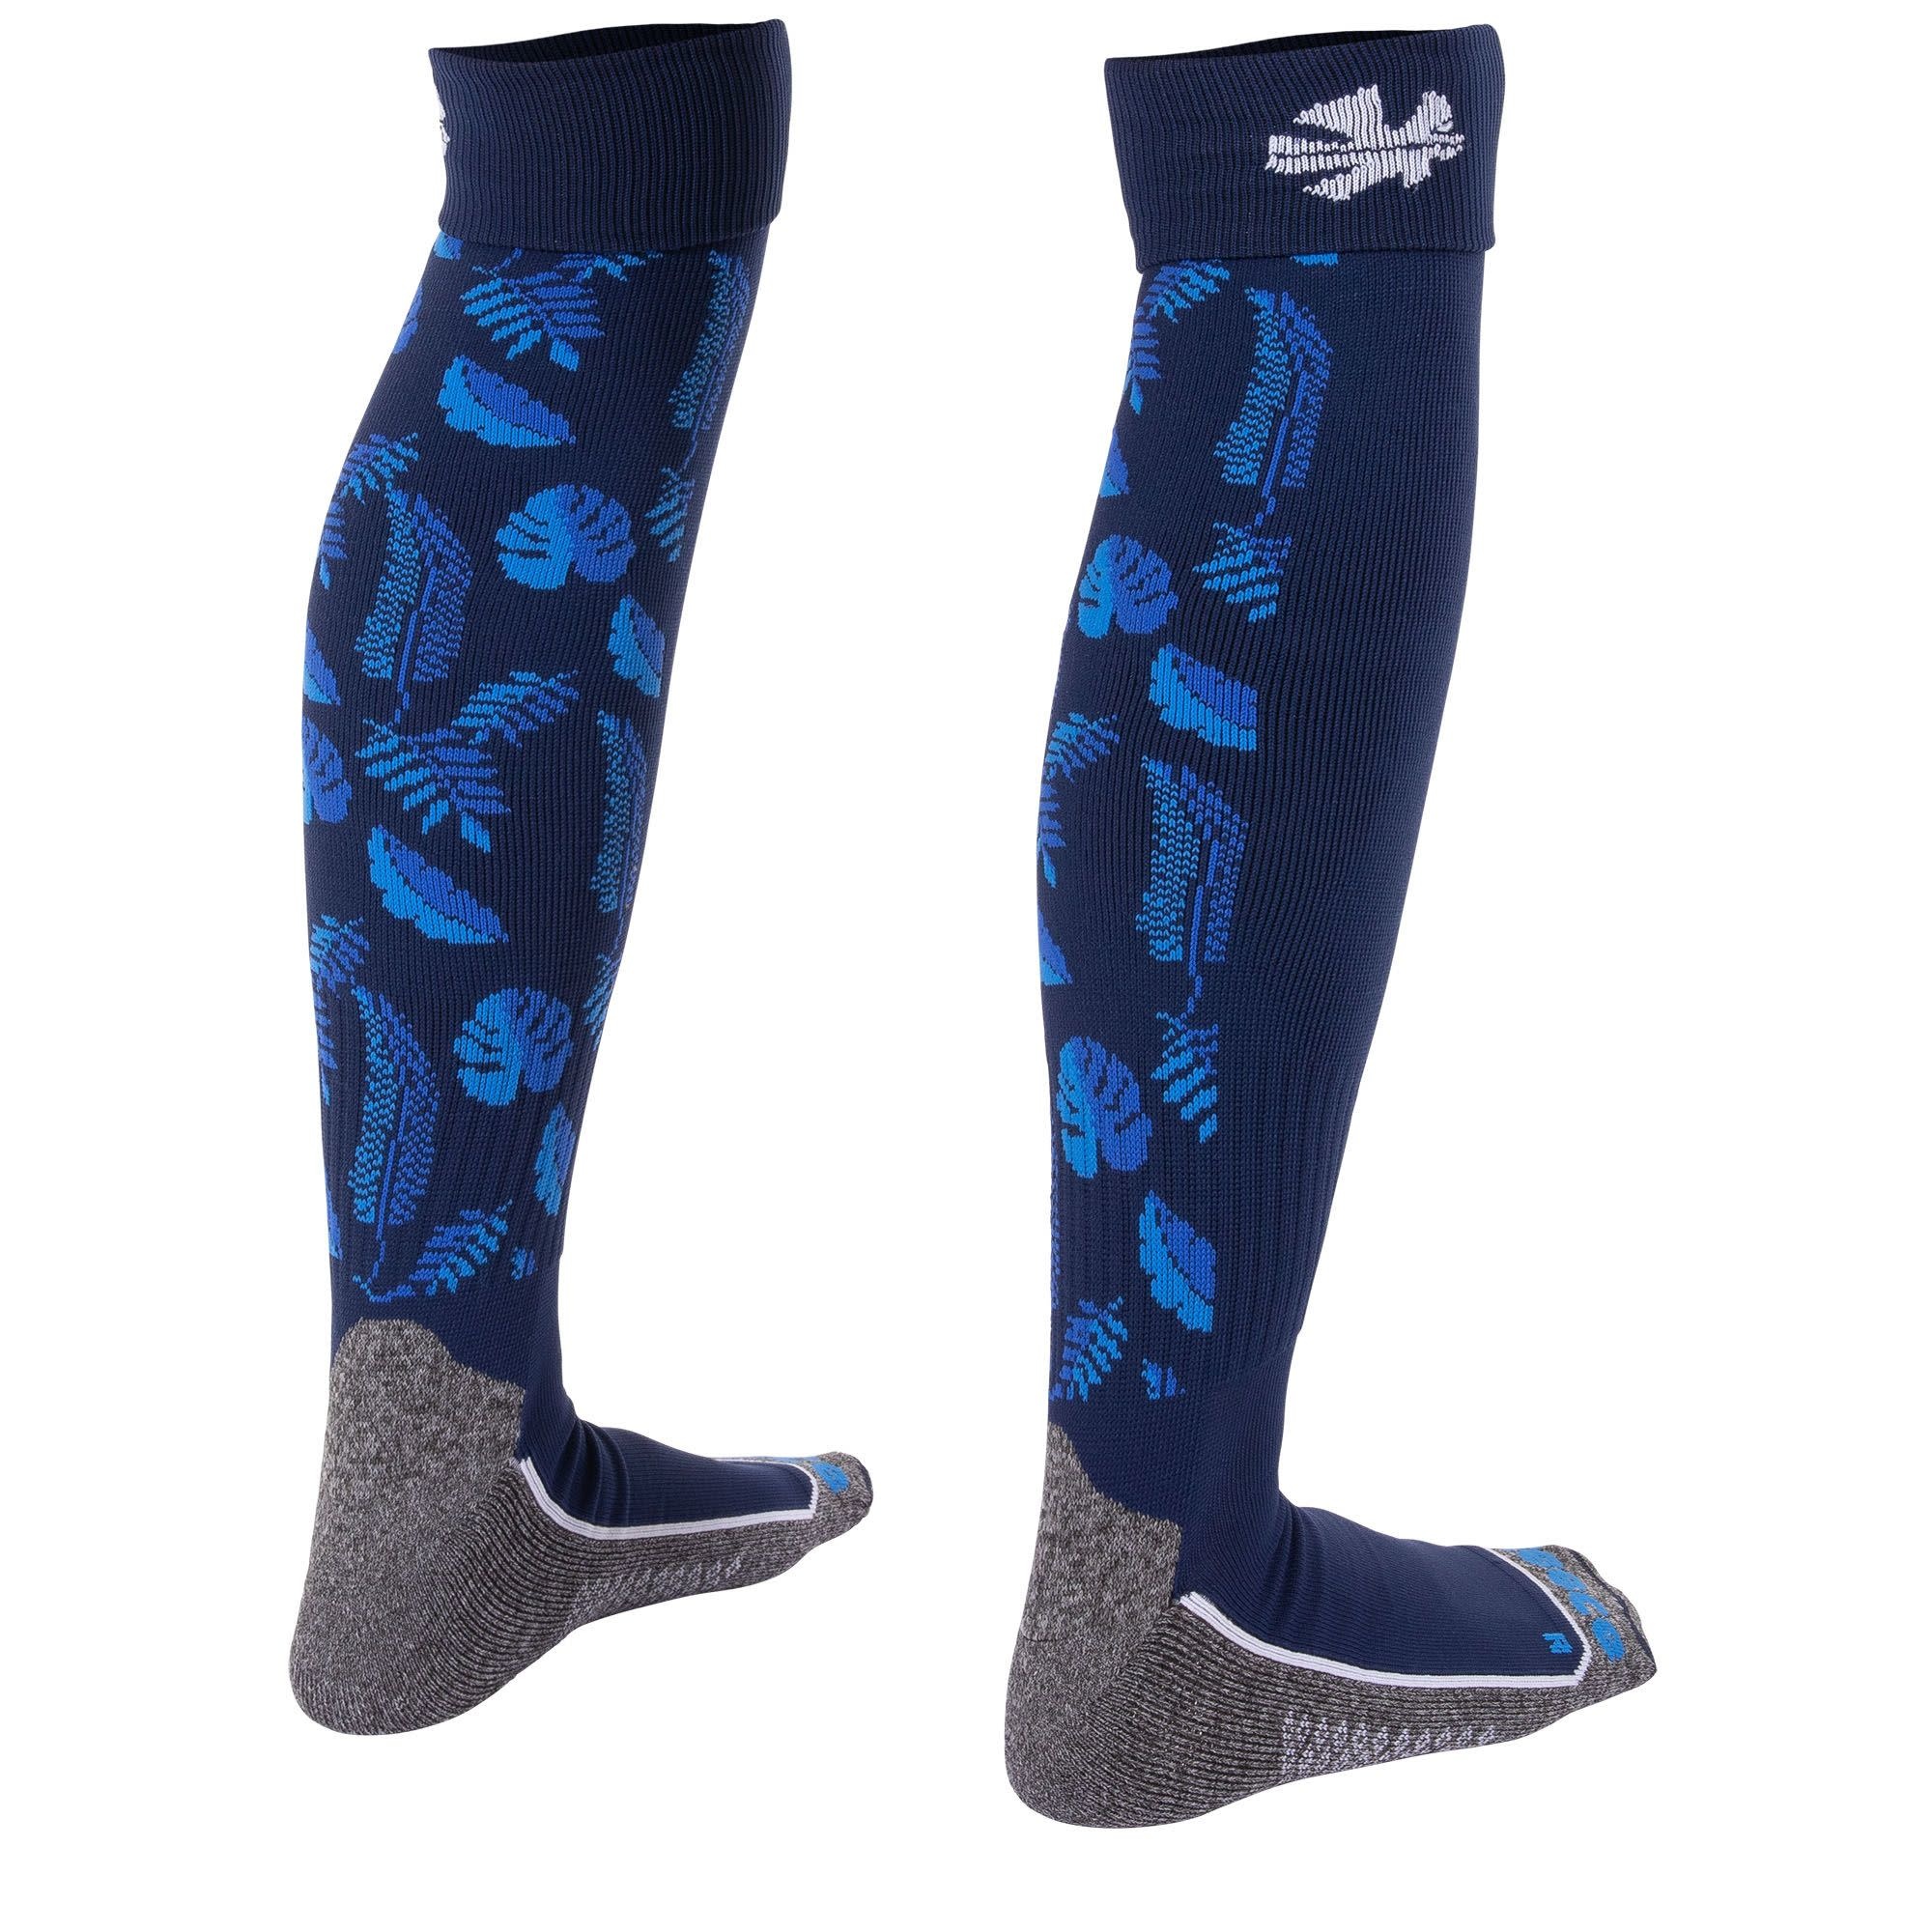 Reece Reece Oxley socks blue